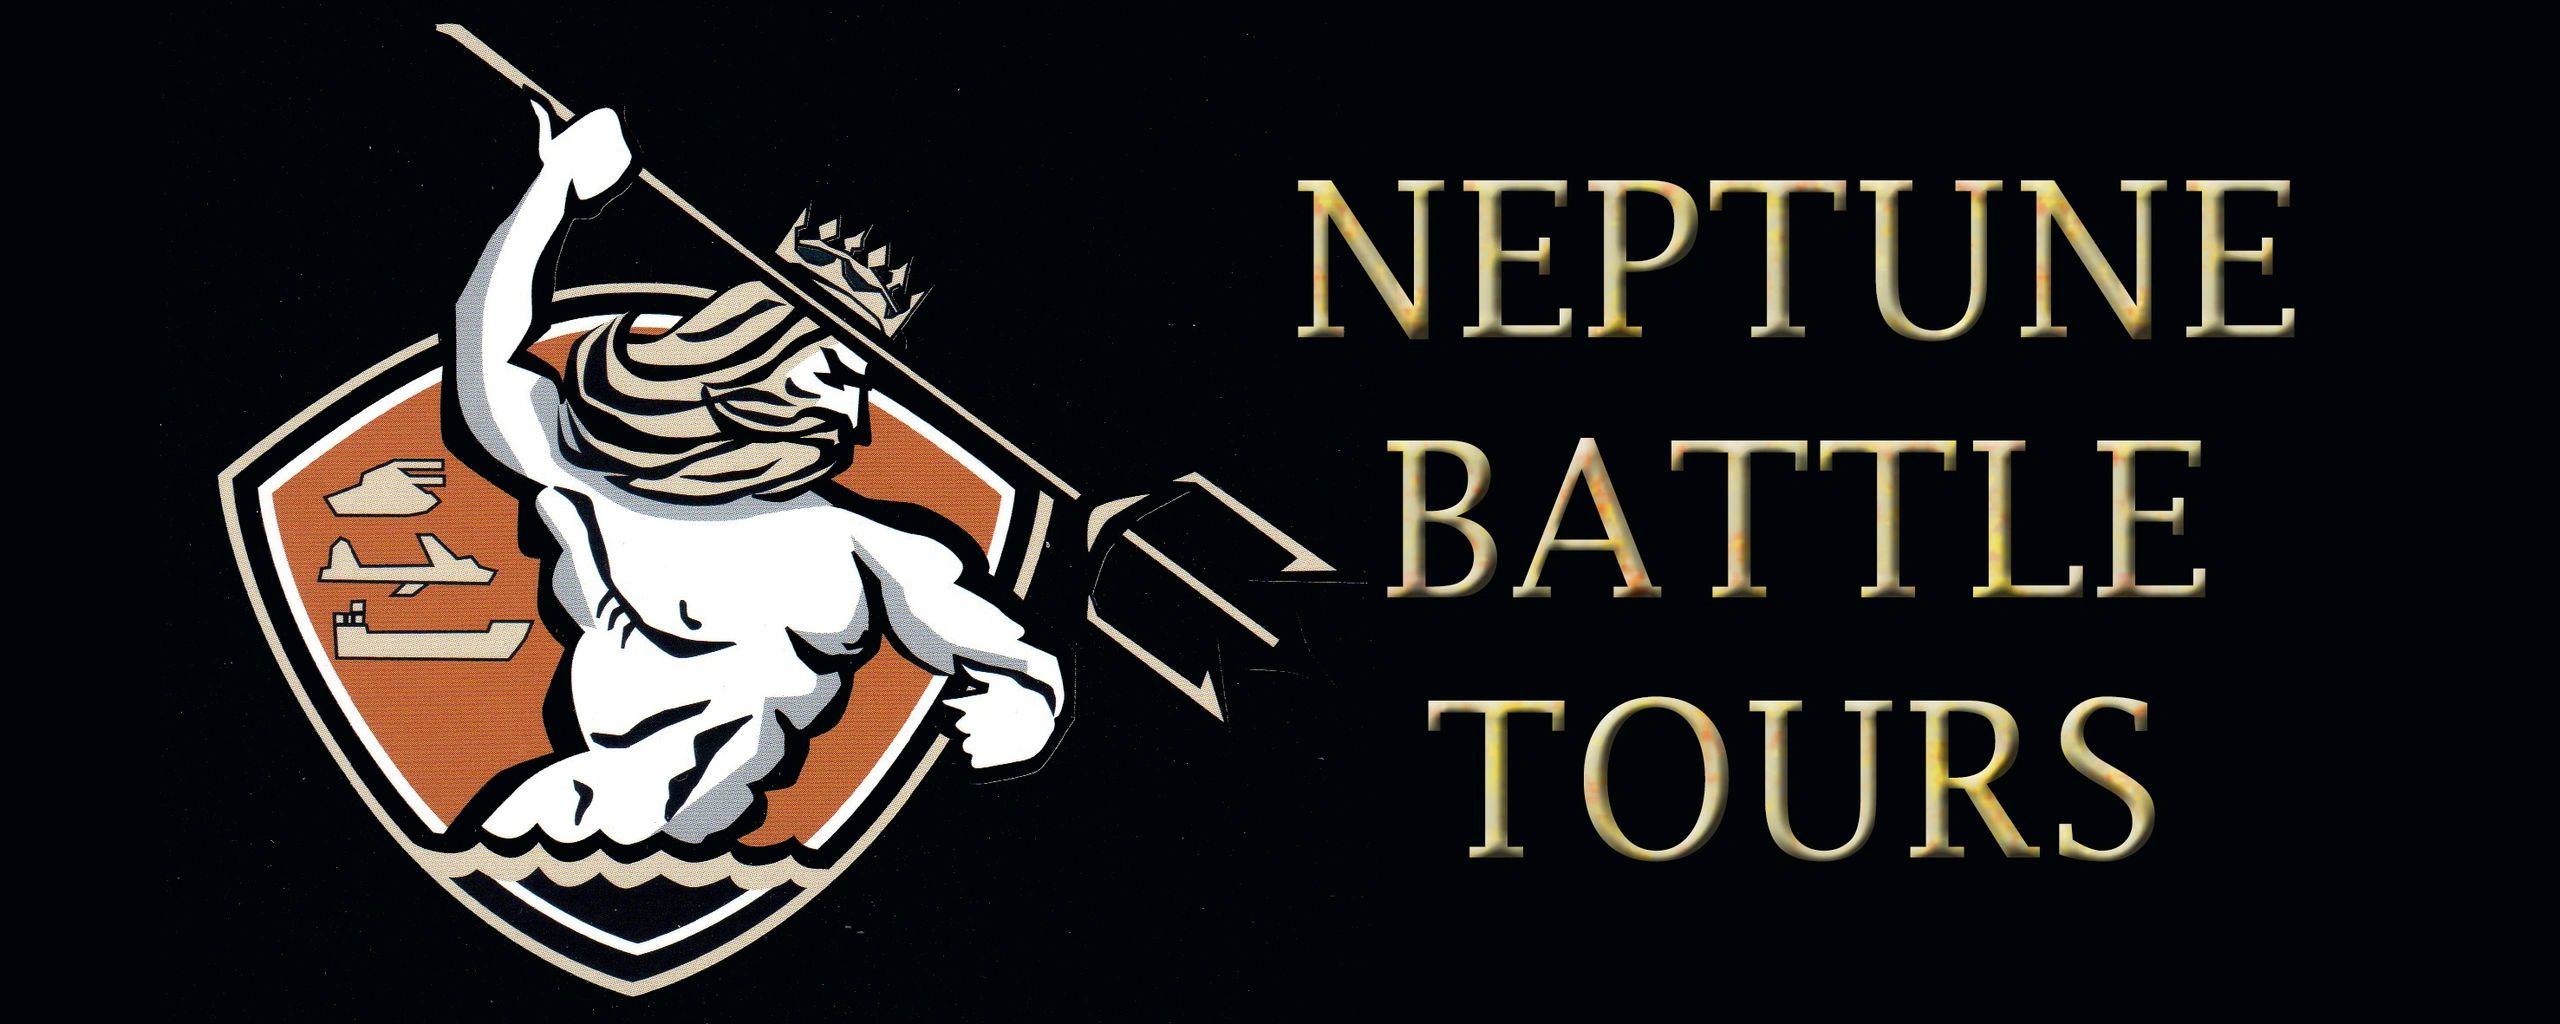 neptune battle tours normandy